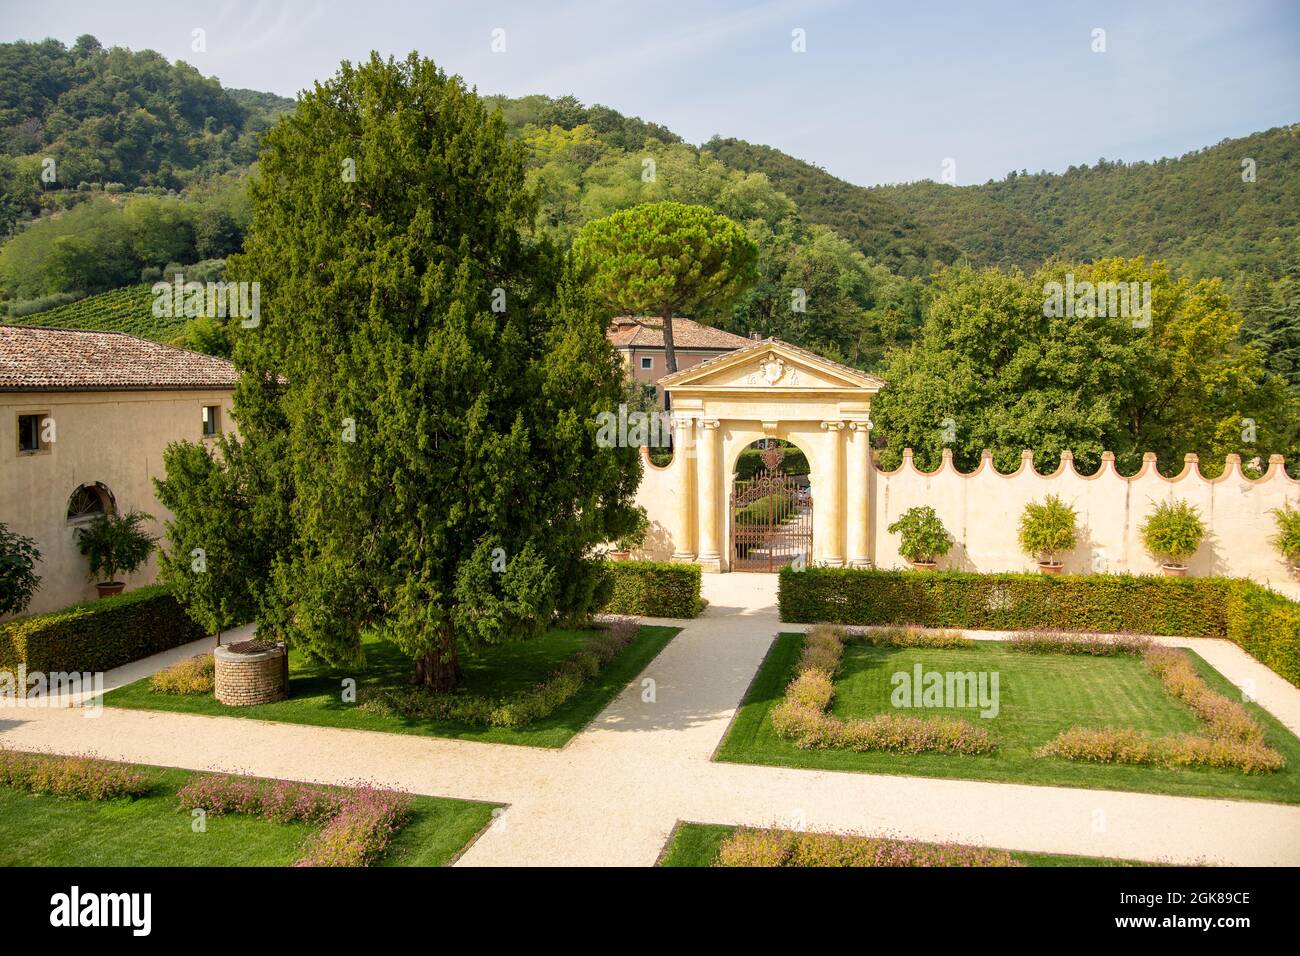 LUVIGLIANO DI TORREGLIA, ITALY - SEPTEMBER 11, 2021: Villa dei Vescovi refined and elegant seventeenth-century rural residence in Renaissance style Stock Photo